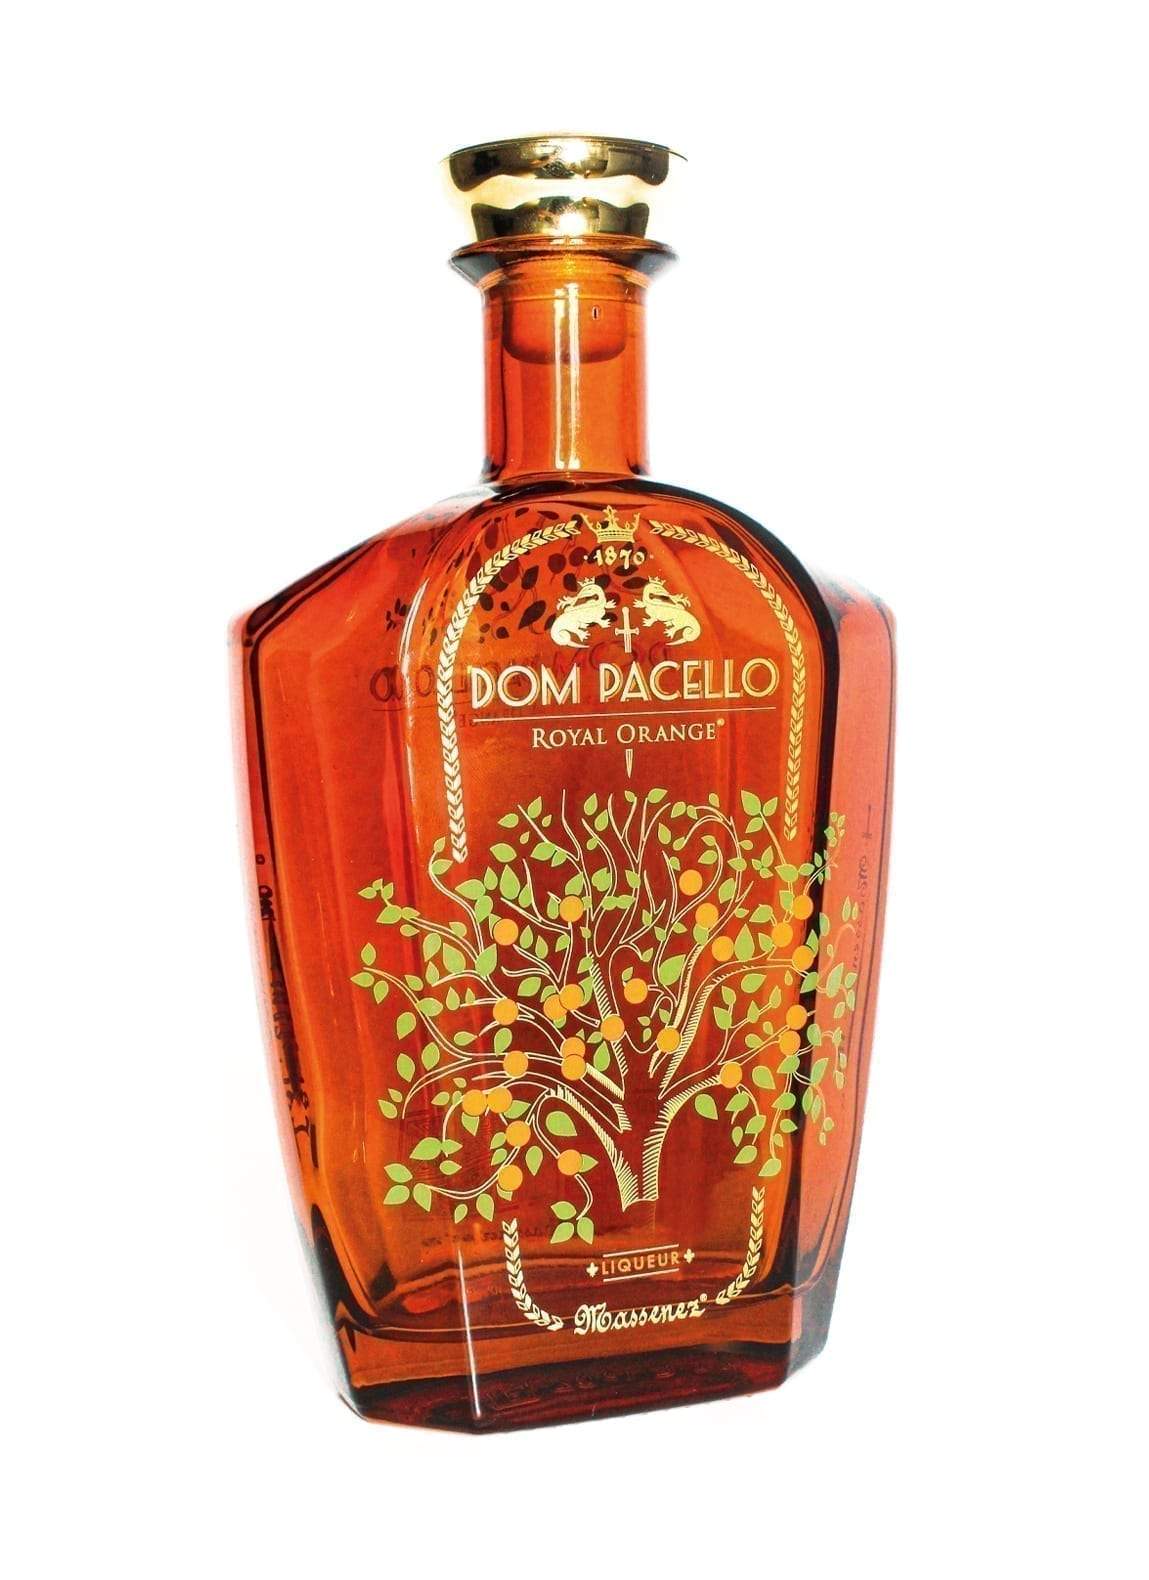 Massenez Dom Pacello orange liqueur 40% 700ml | Liqueurs | Shop online at Spirits of France